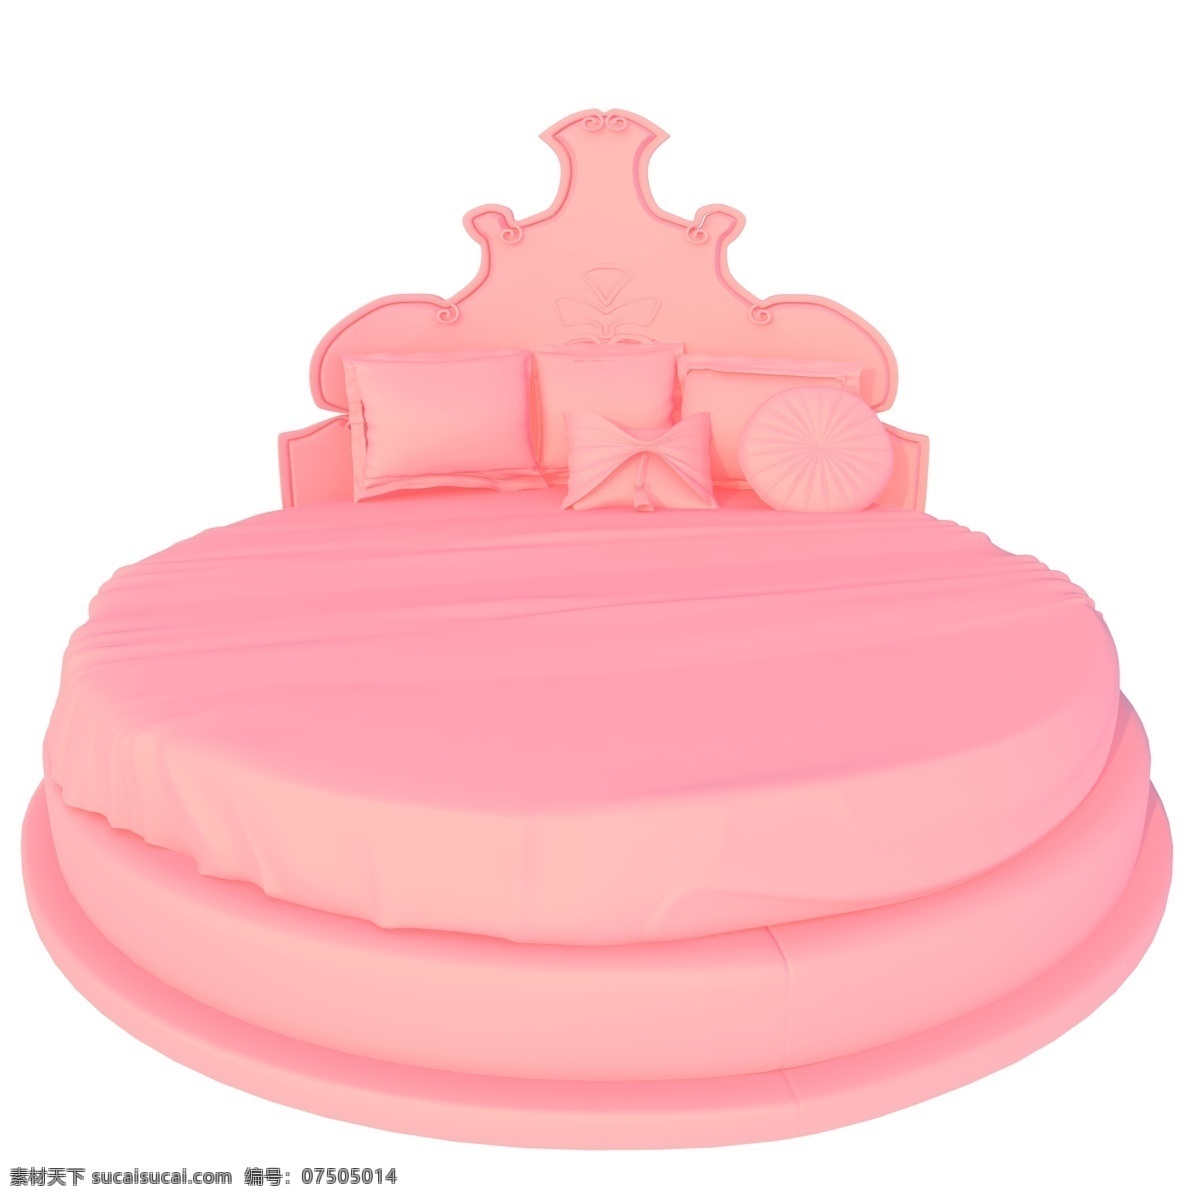 圆形家居床 时尚风 家具 床 粉色 立体